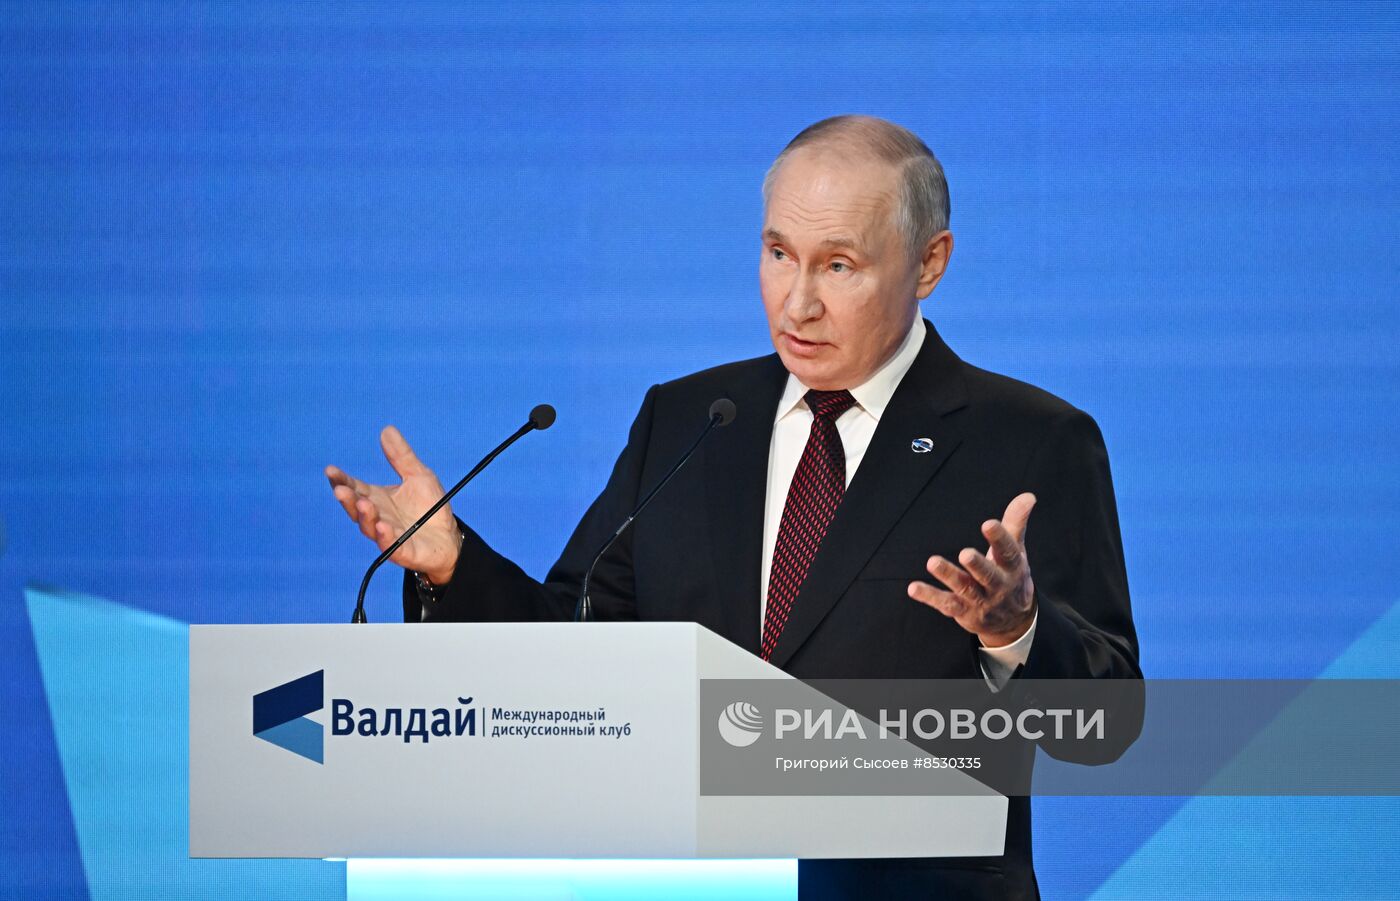 Президент РФ В. Путин принял участие в работе дискуссионного клуба "Валдай"